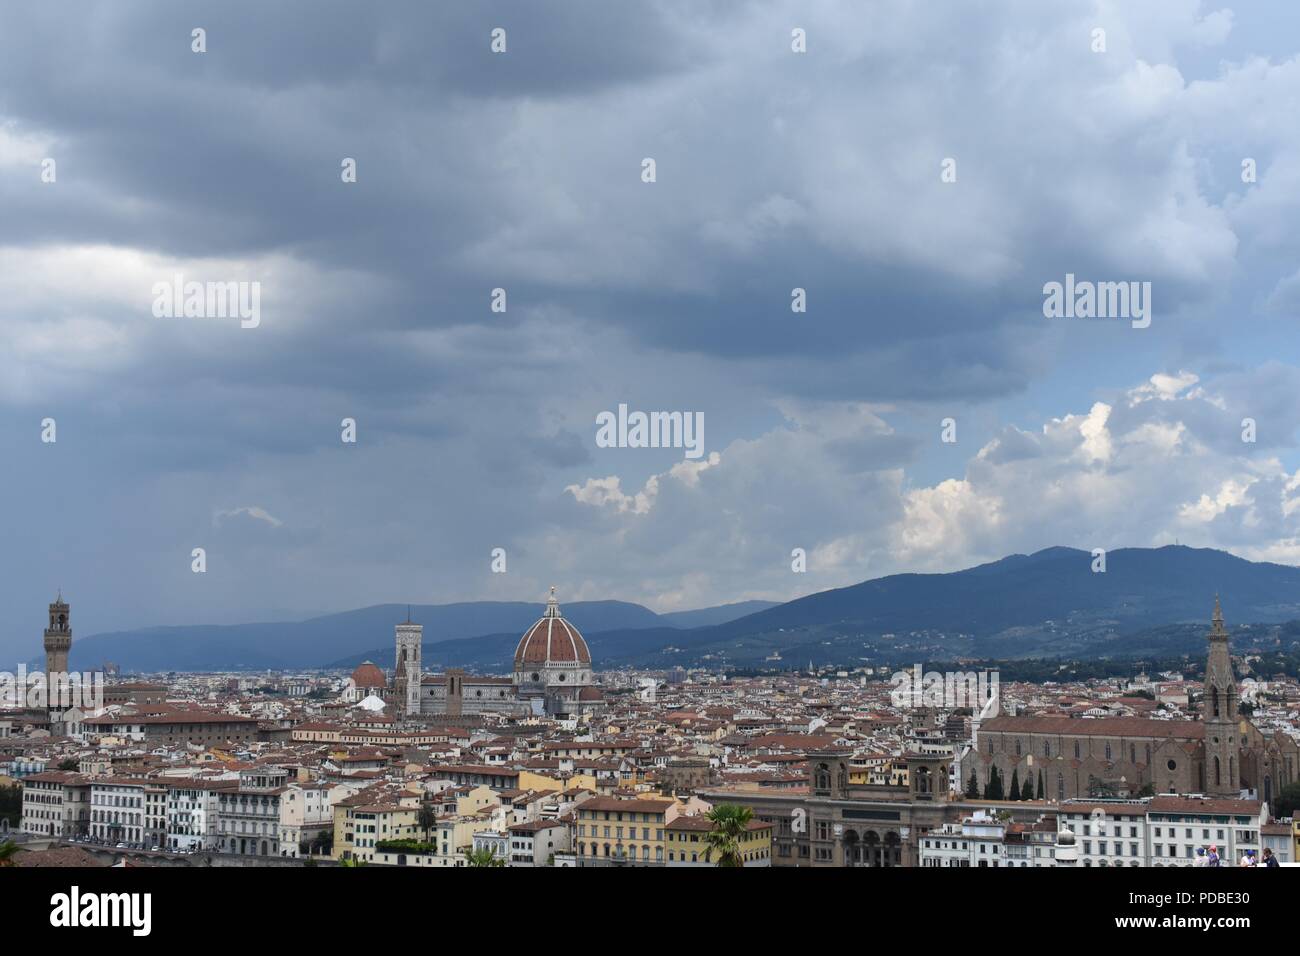 Stimmungsvolle Beleuchtung und Moody bewölkte Himmel über der Skyline von Florenz droht mit dem Dom und dem Turm, mit dem dunstigen toskanischen Hügel. Stockfoto